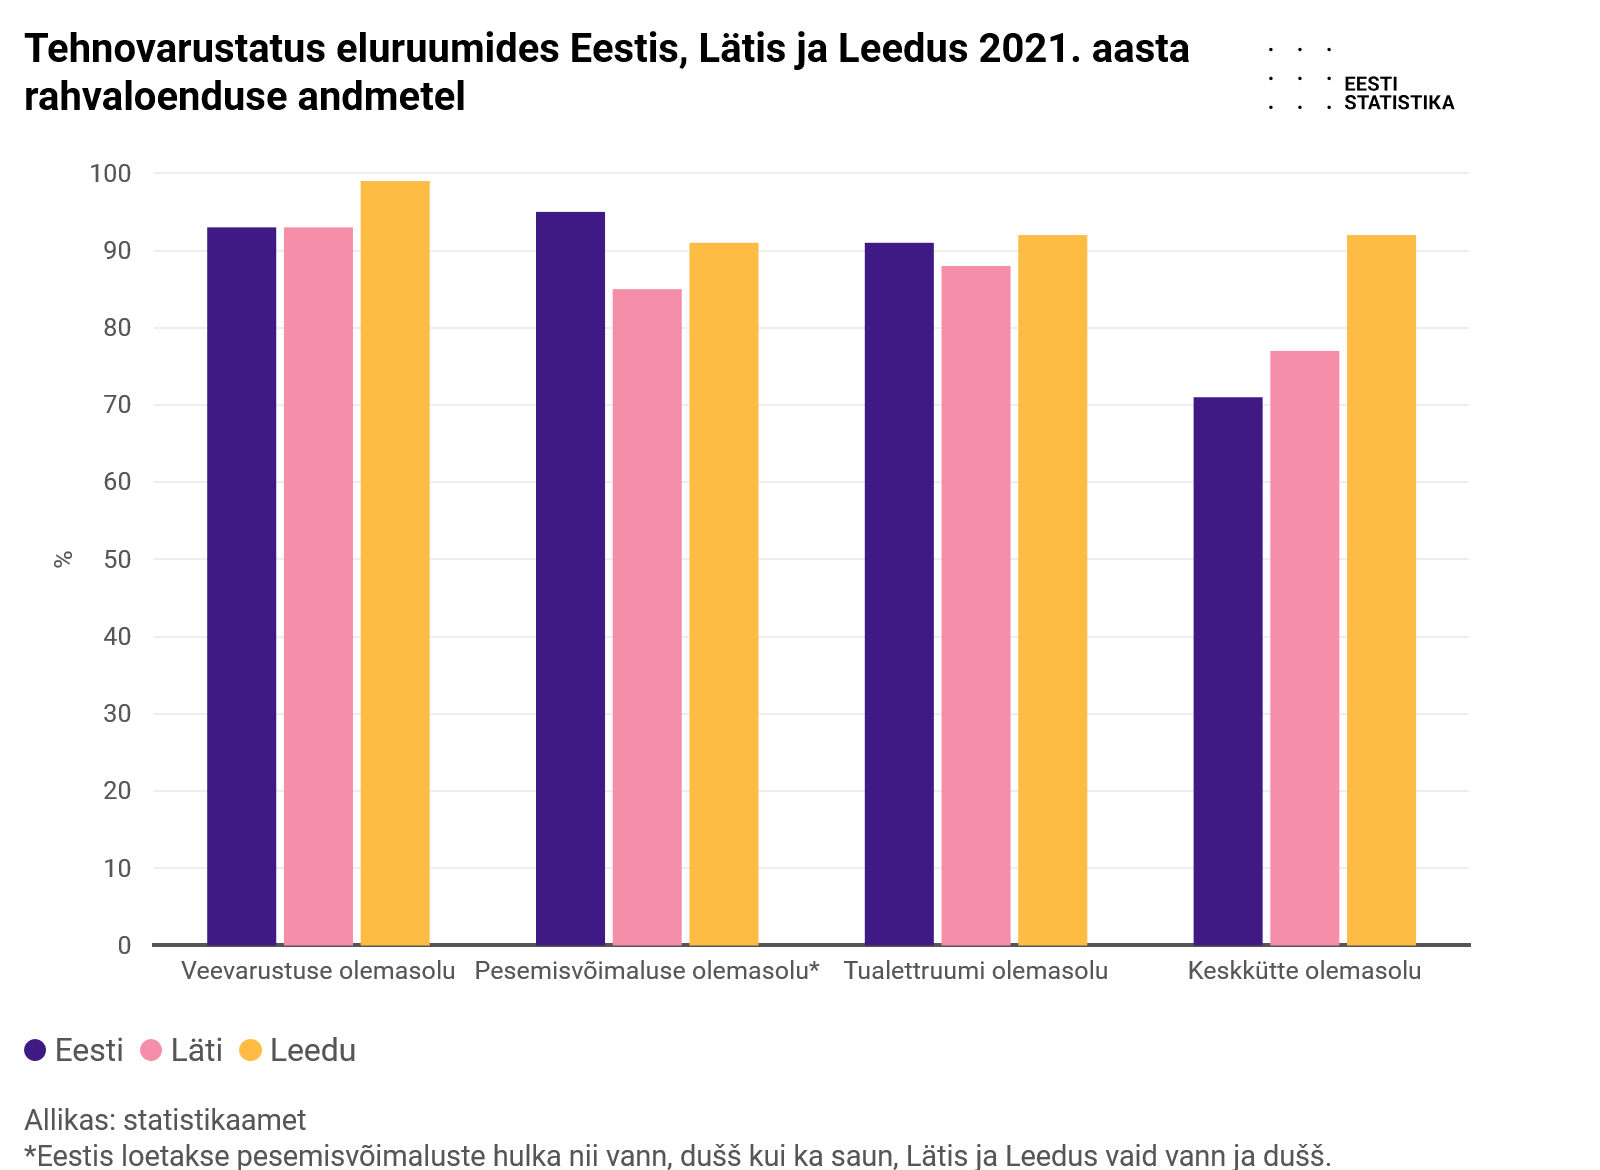 Eesti eluruumid on väiksemad kui Lätis, aga suuremad kui Leedus